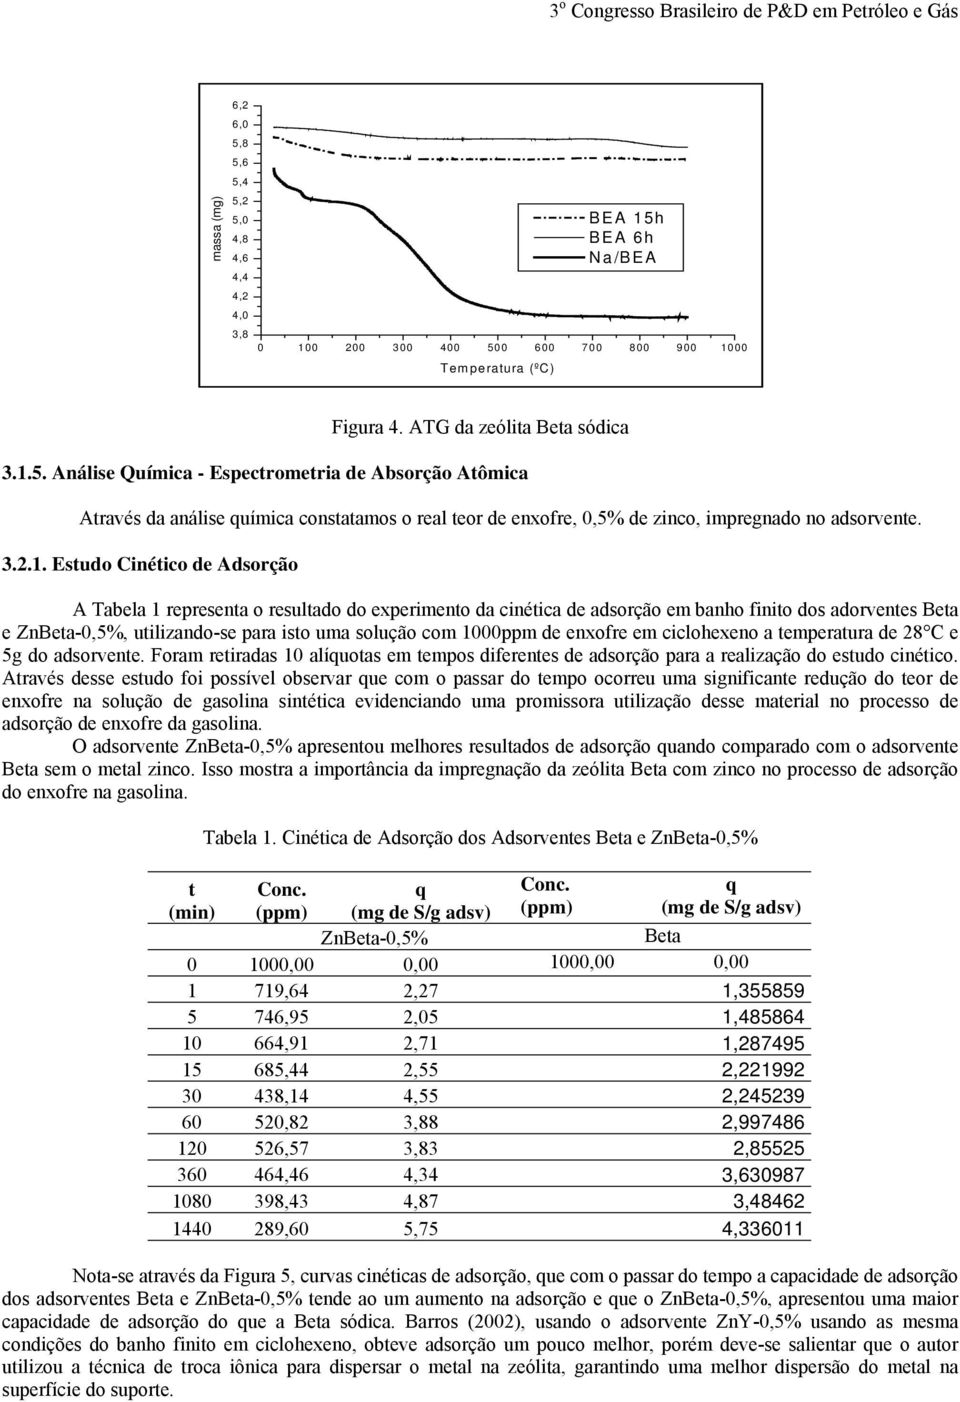 Estudo Cinético de Adsorção A Tabela 1 representa o resultado do experimento da cinética de adsorção em banho finito dos adorventes Beta e ZnBeta-0,5%, utilizando-se para isto uma solução com 1000ppm